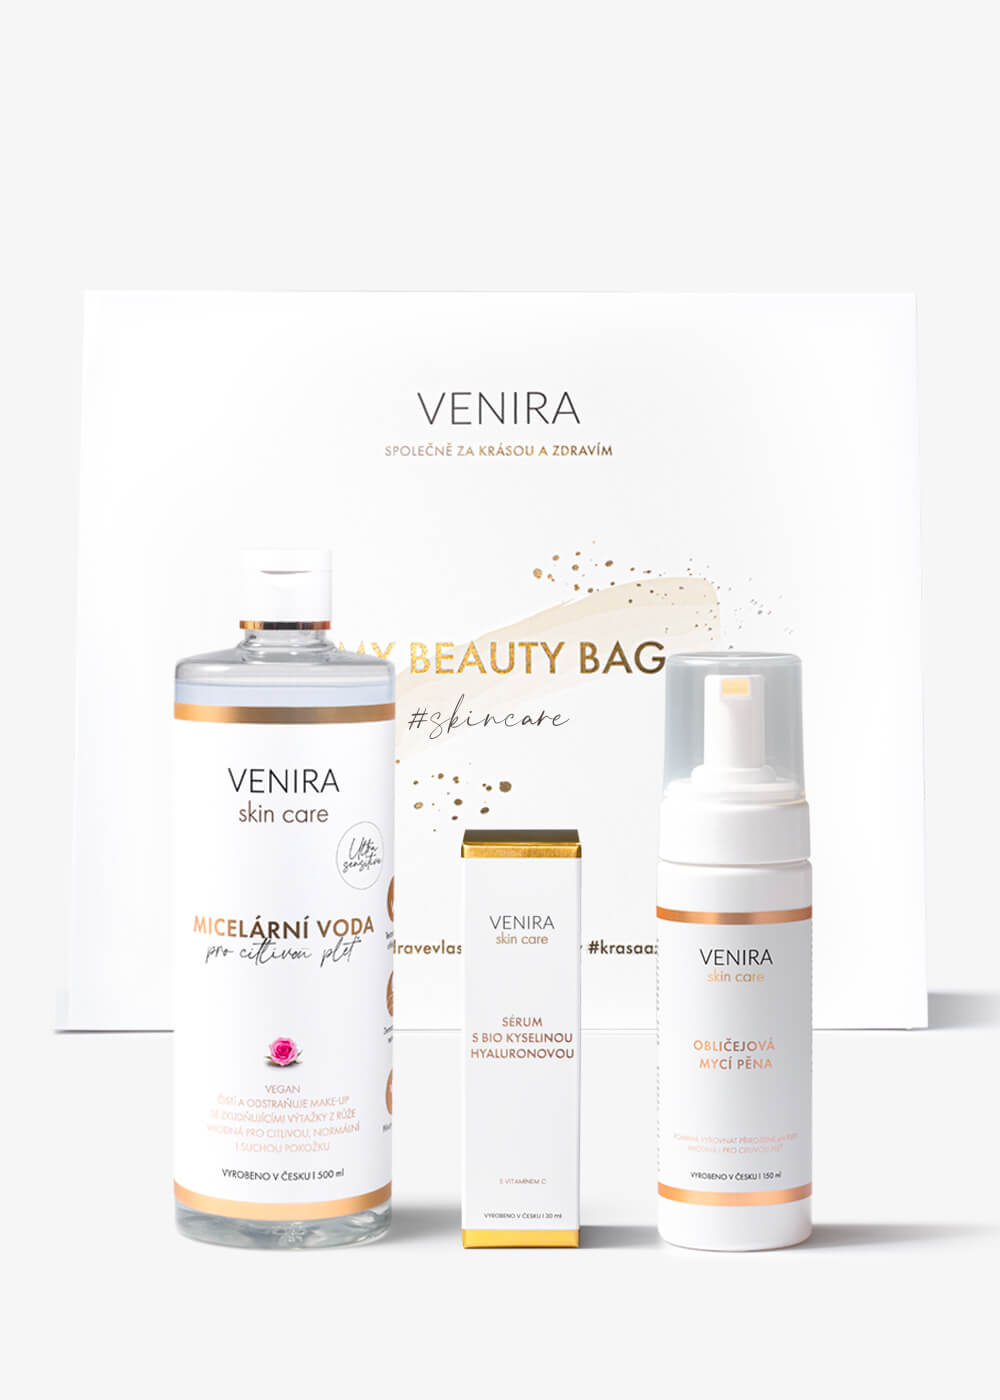 VENIRA beauty bag, dárková sada pro čištění a péči o pleť - obličejová mycí pěna 150 ml, micelární voda pro citlivou pleť 500 ml, sérum s bio kyselinou hyaluronovou a vitaminem c 30